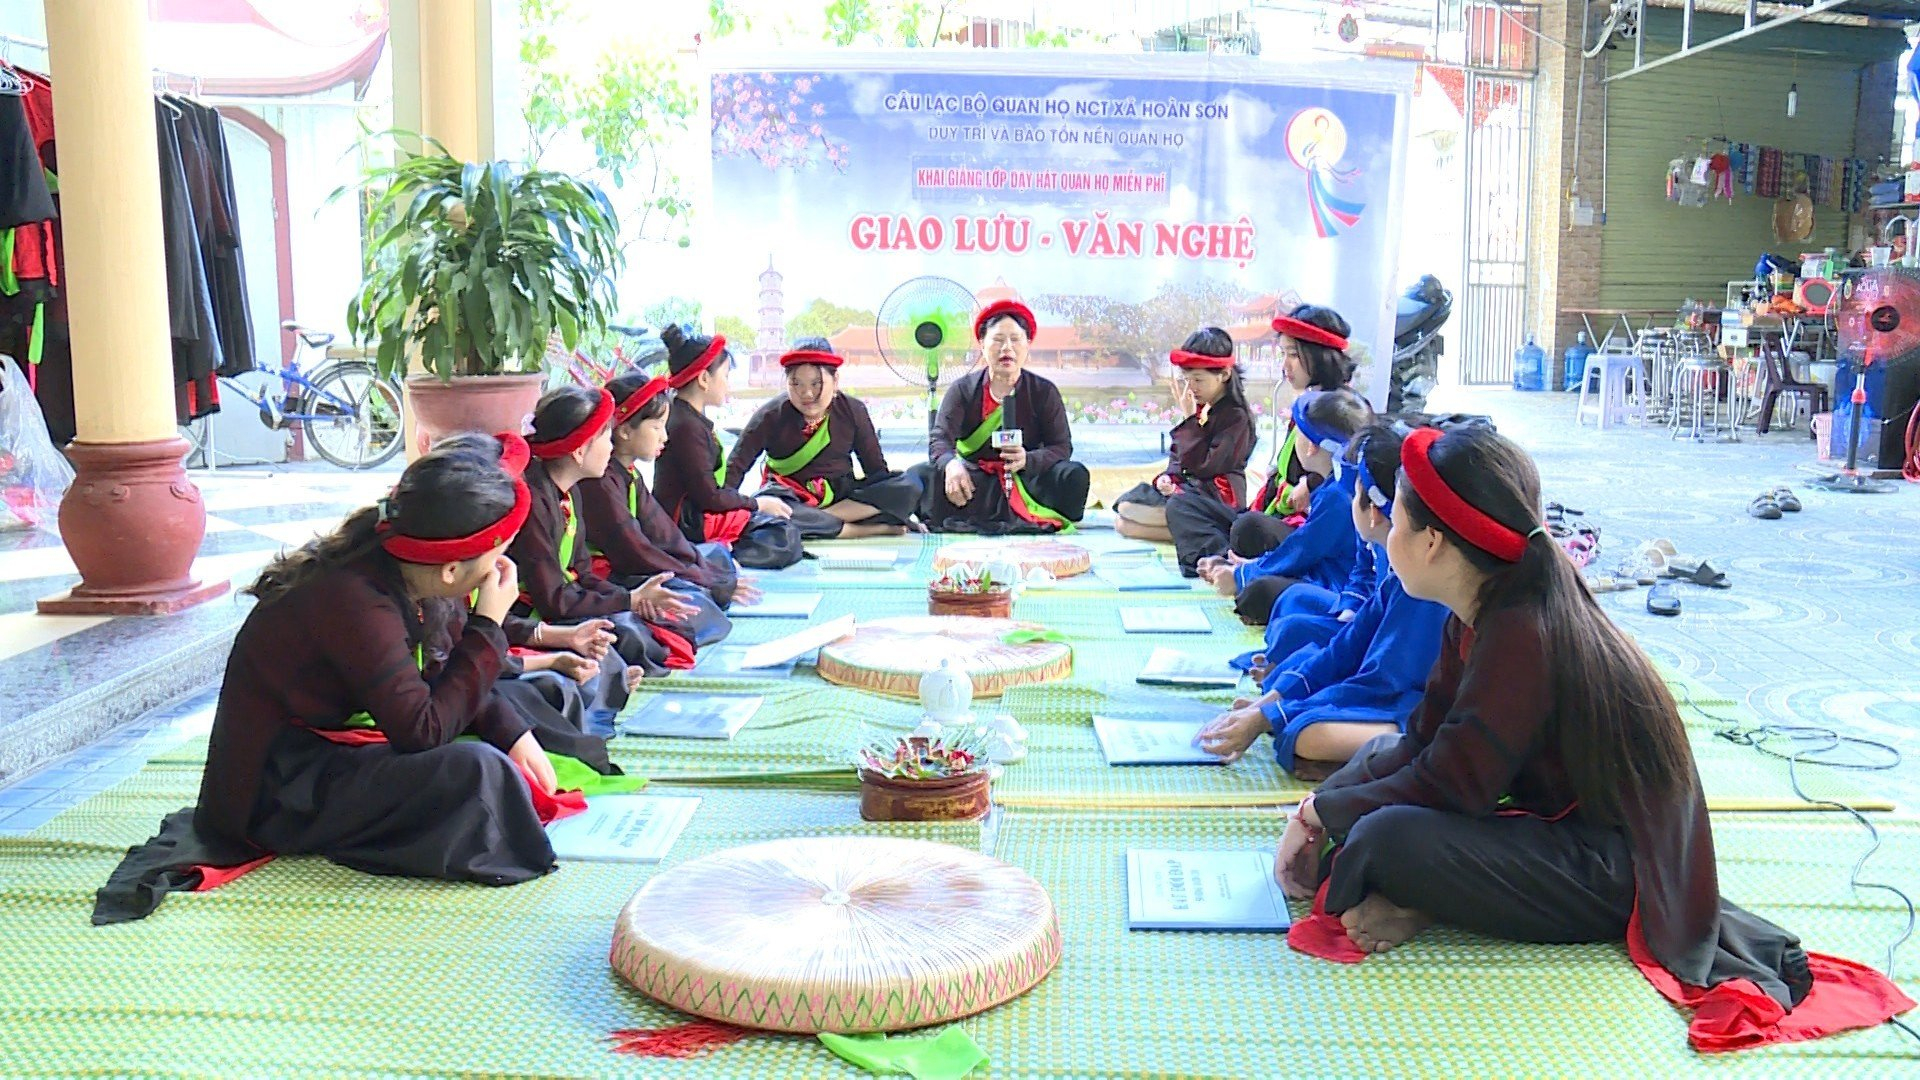 Quan họ măng non ở một làng của Bắc Ninh, ra đời làm doanh nhân, ca sỹ, nội trợ vẫn vang, rền, nền, nảy - Ảnh 2.